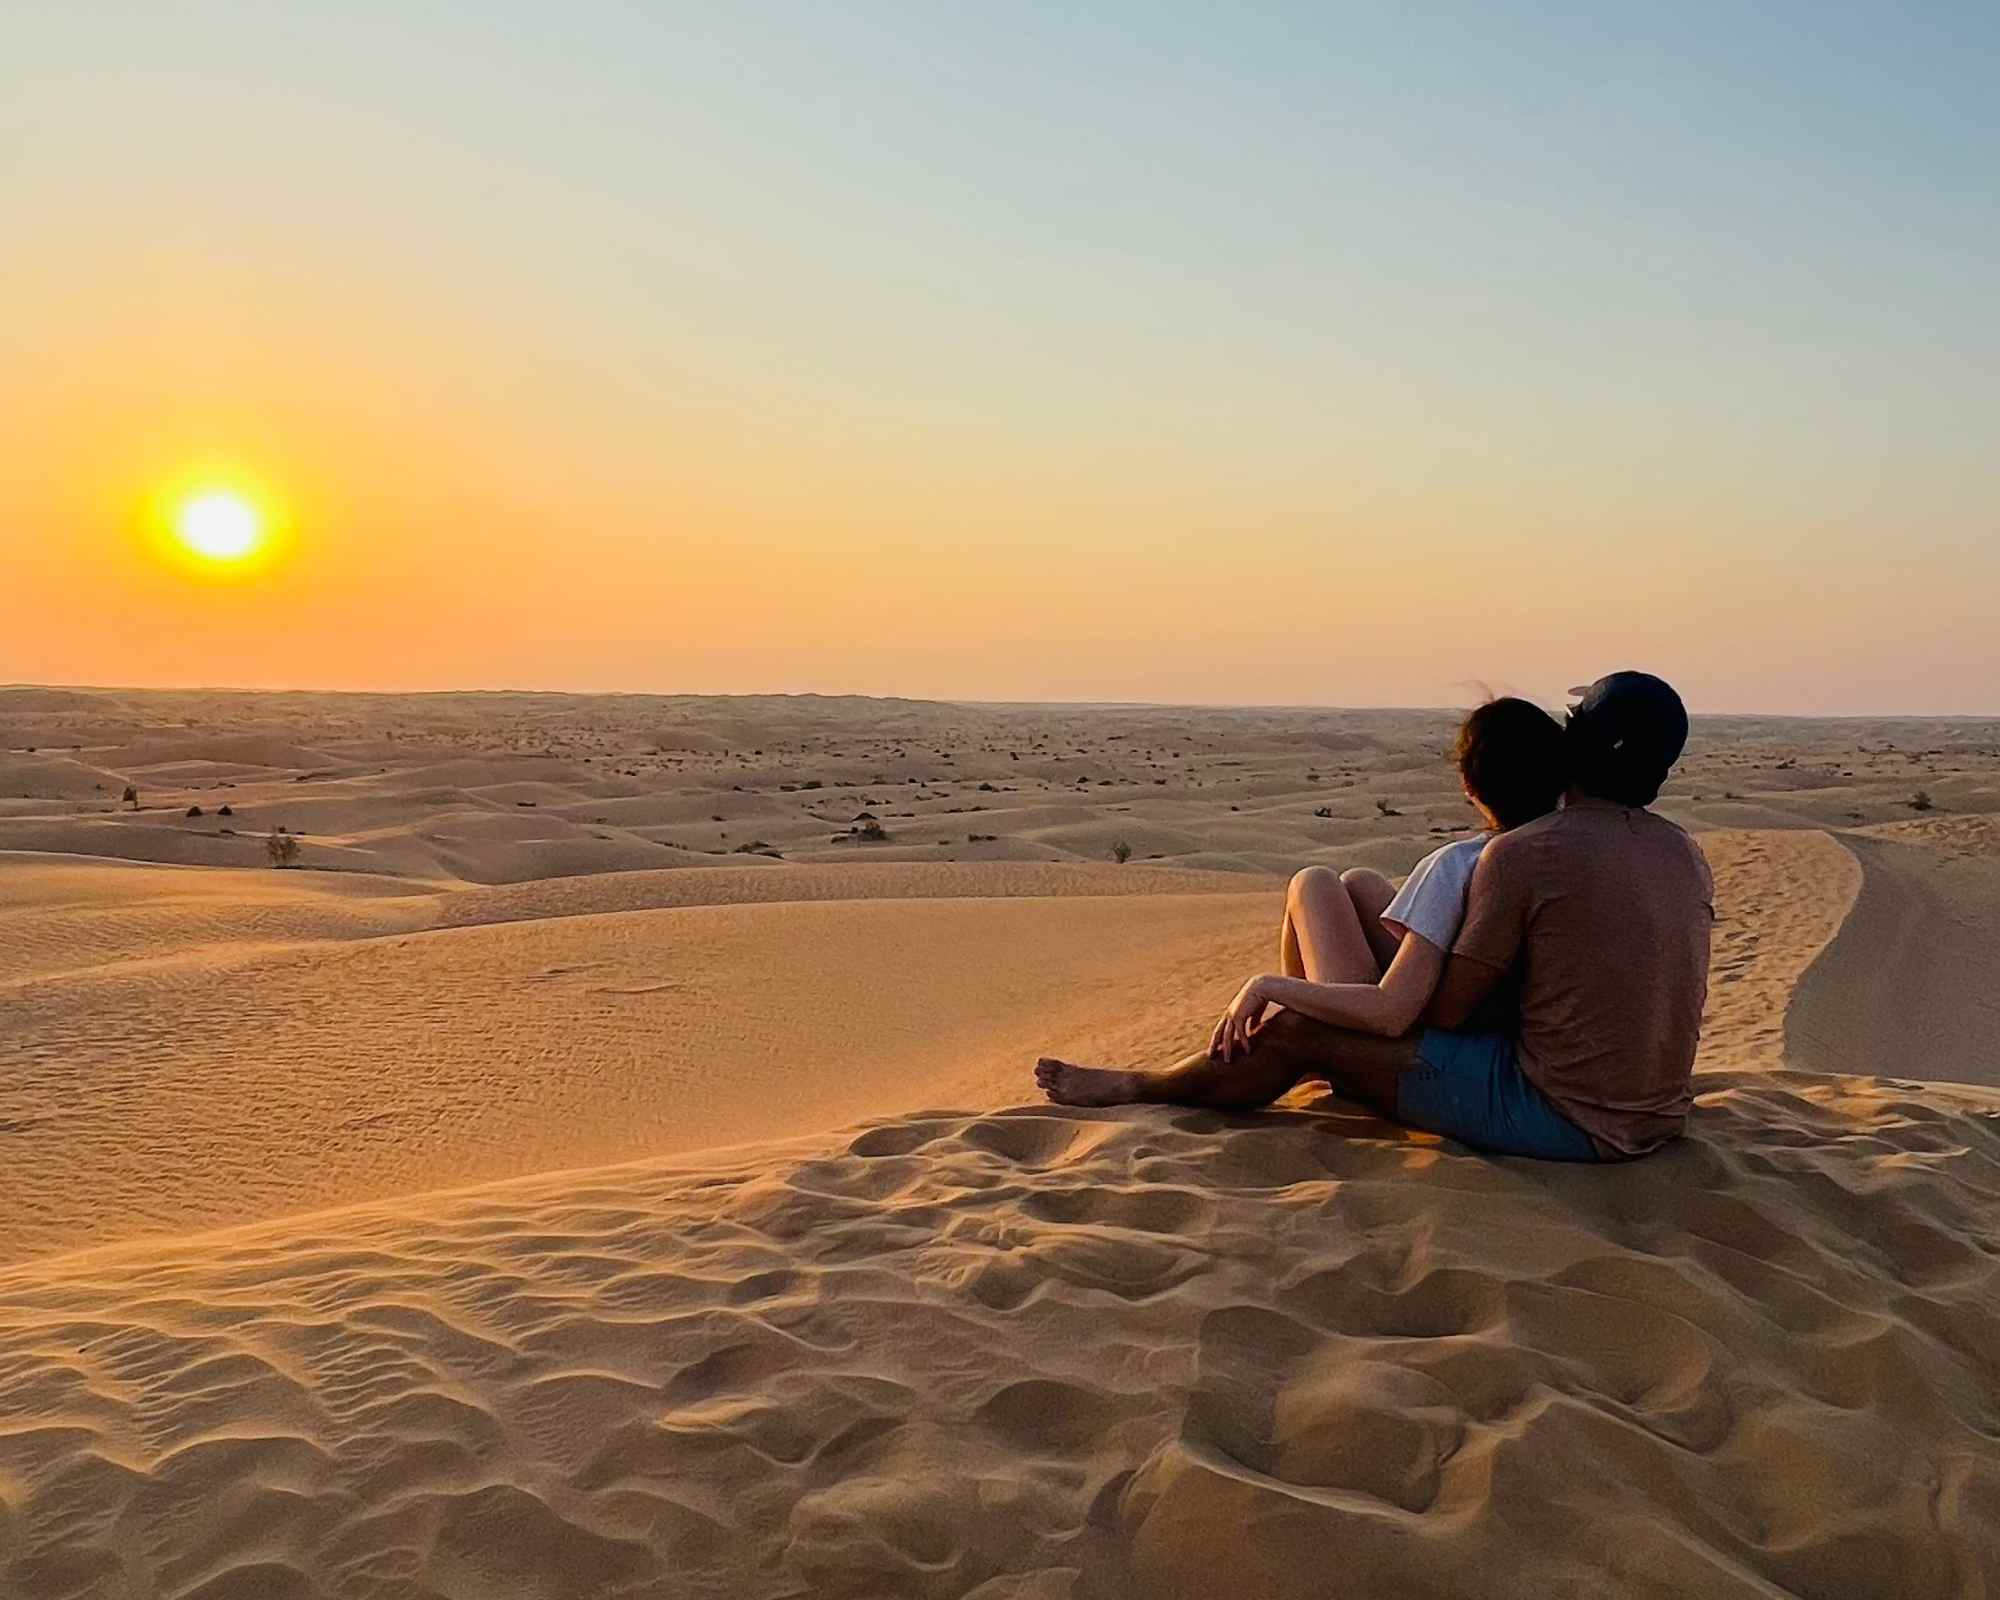 Romantic Sunset in the desert